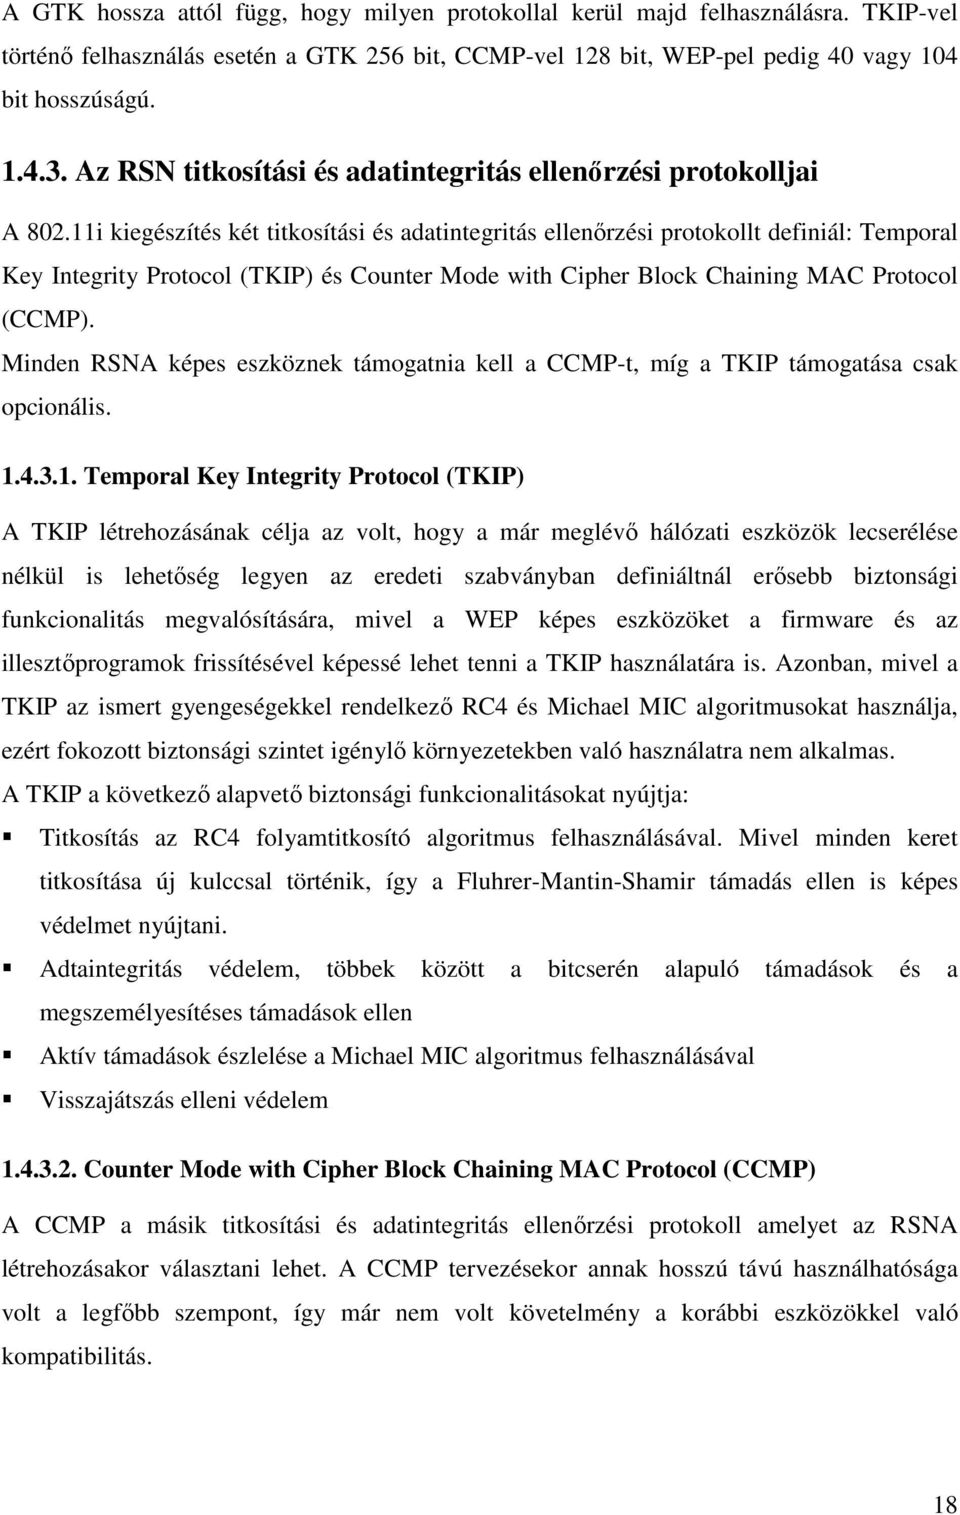 11i kiegészítés két titkosítási és adatintegritás ellenırzési protokollt definiál: Temporal Key Integrity Protocol (TKIP) és Counter Mode with Cipher Block Chaining MAC Protocol (CCMP).